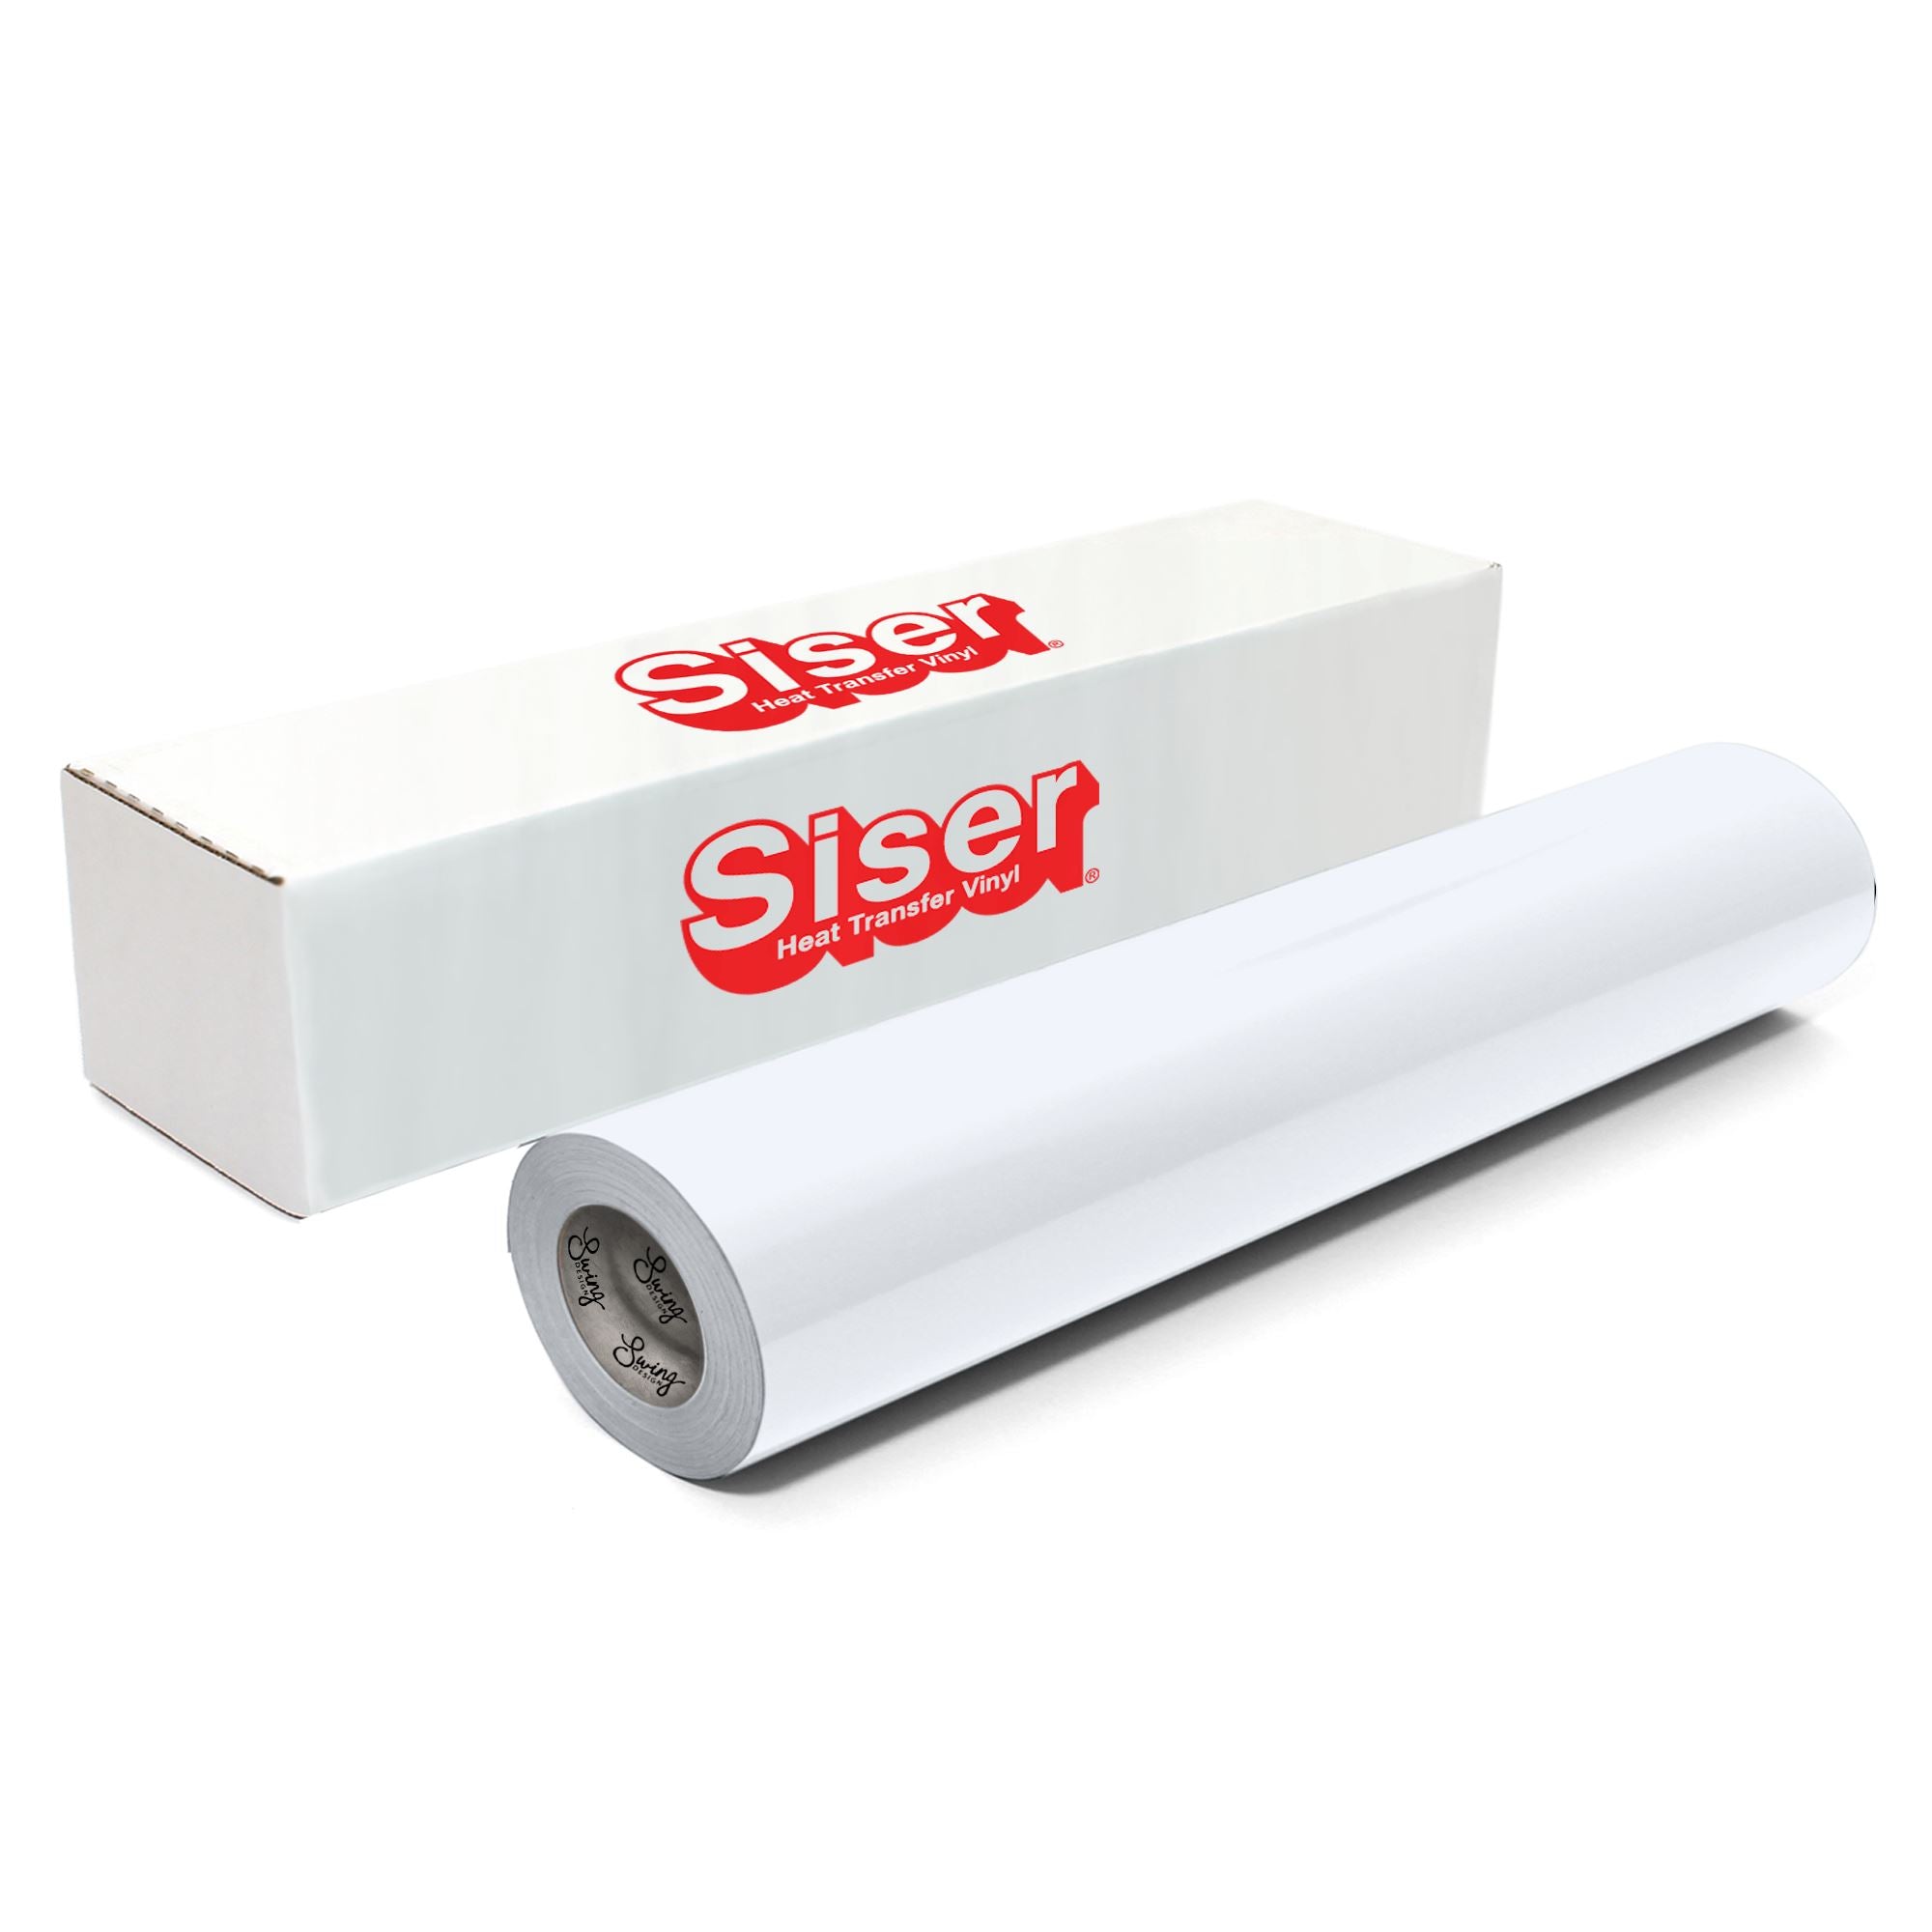 8 Pack: Siser® StripFlock® Heat Transfer Vinyl, White